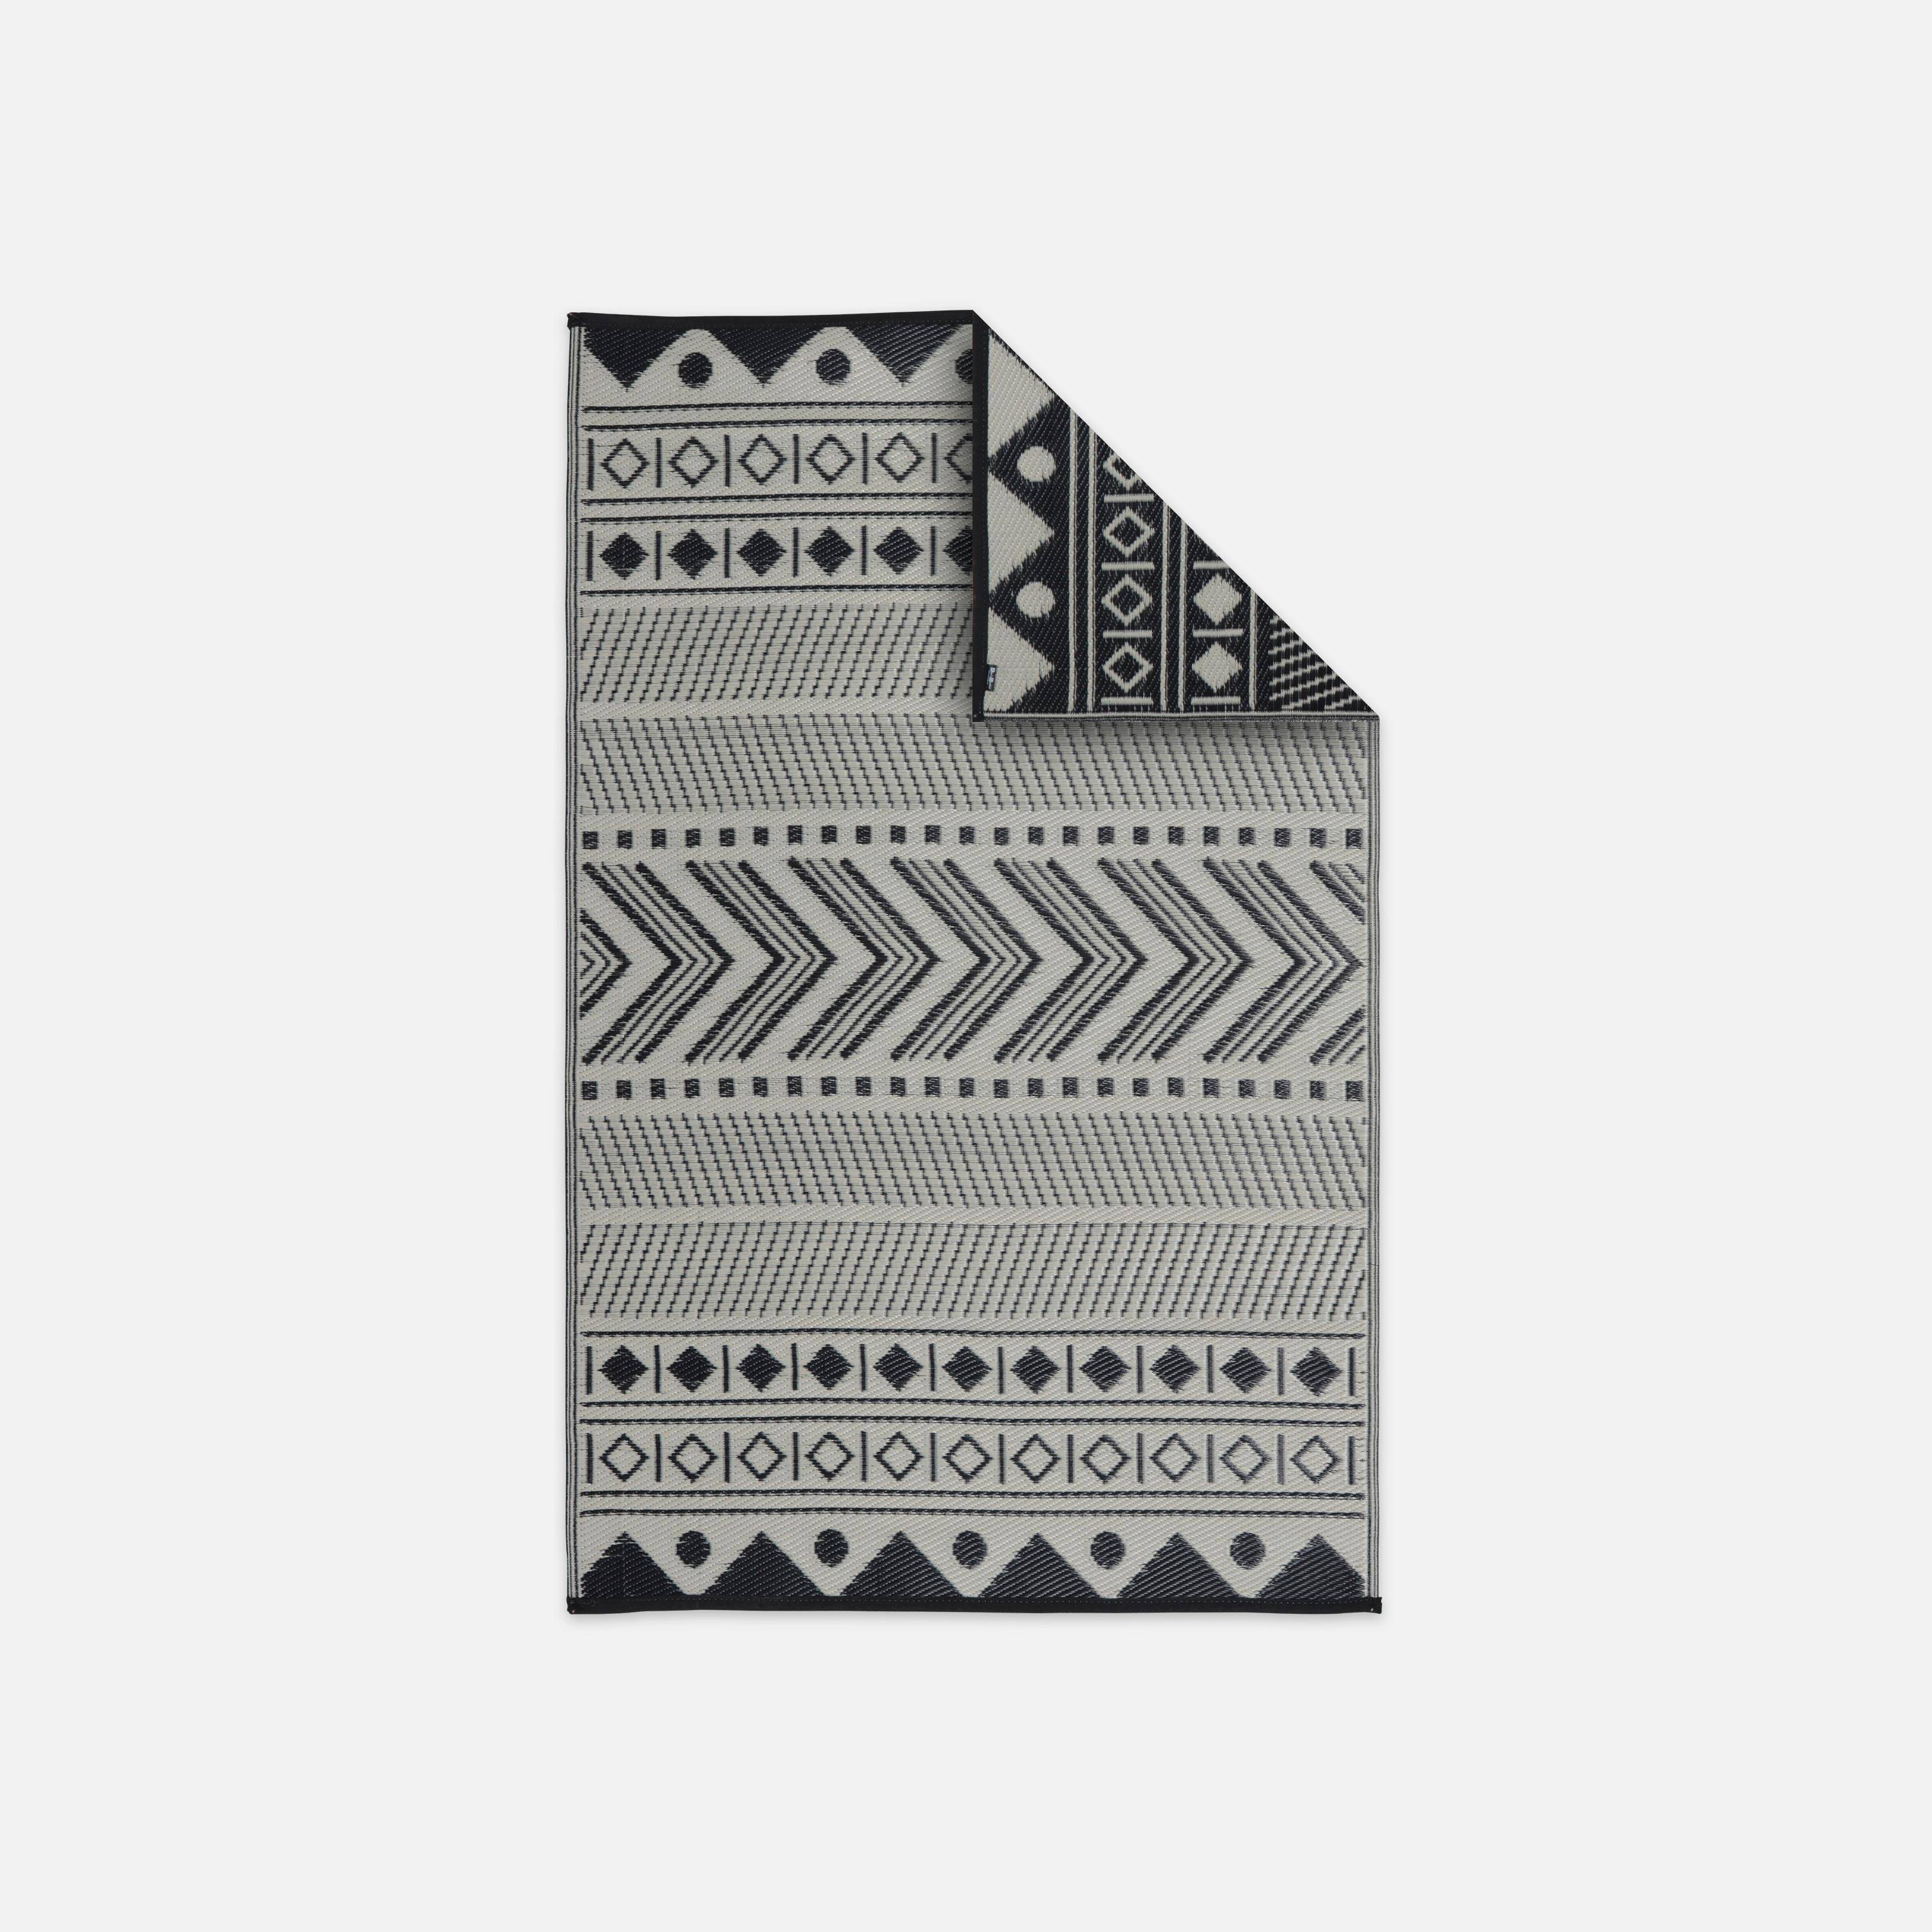 Tapete exterior 120x180cm Bamako - Rectangular, padrão étnico preto / bege, quadriculado, reversível, interior / exterior Photo1